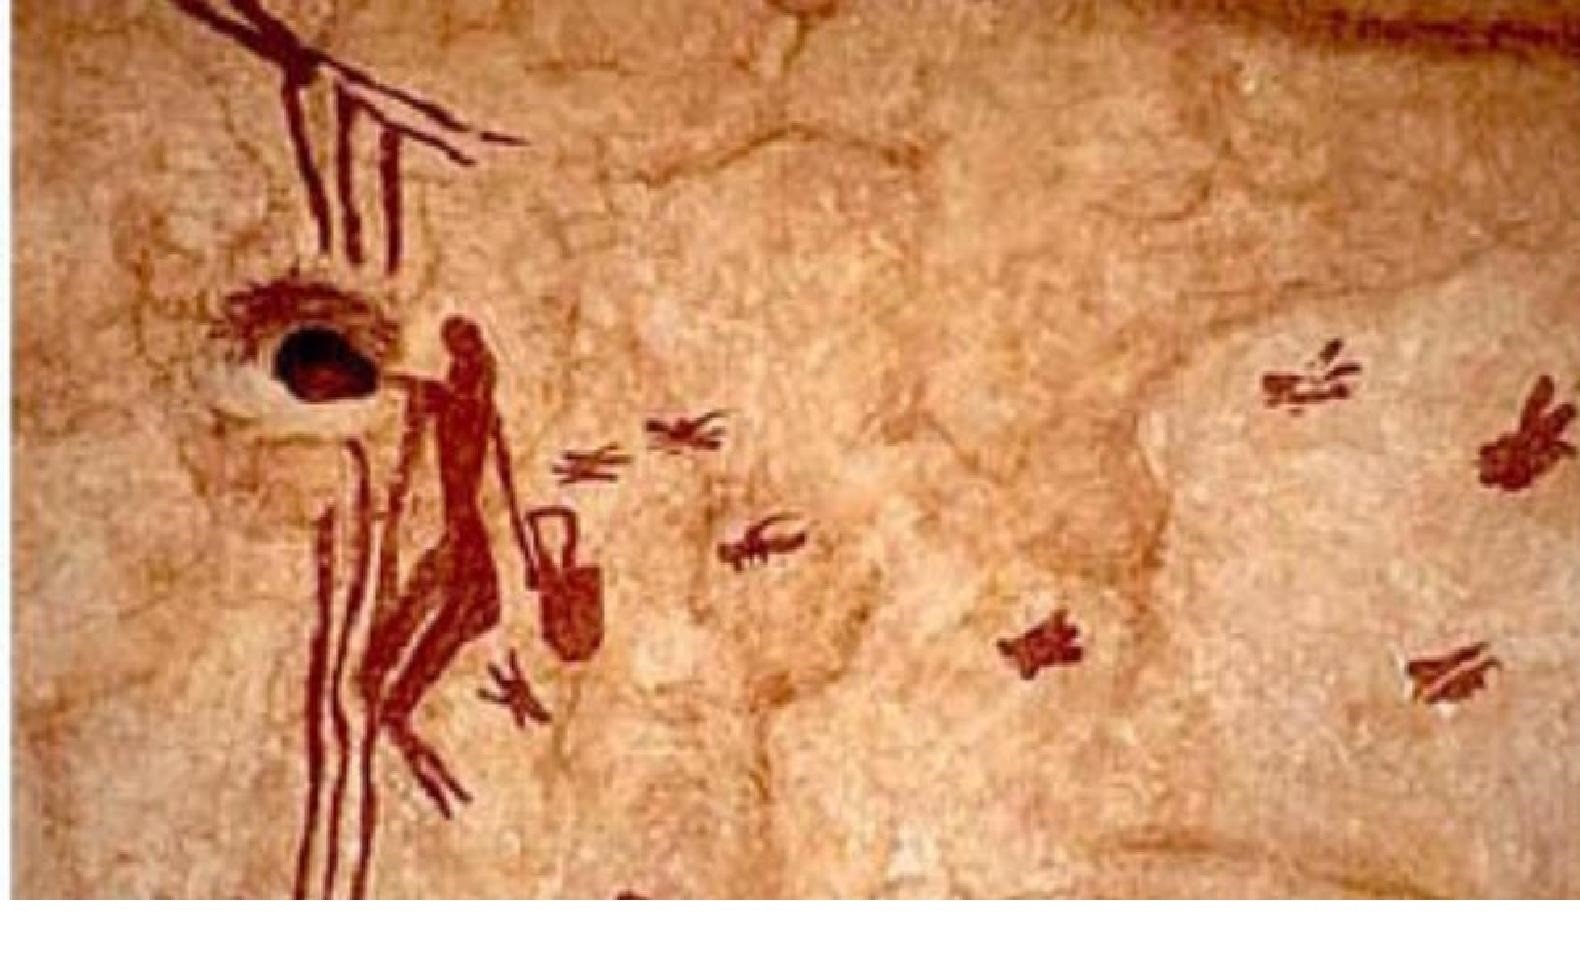 **Figura 4.11. Pintura rupestre de más de 8000 años, en la Cueva de la Araña, <br/>Valencia, España**